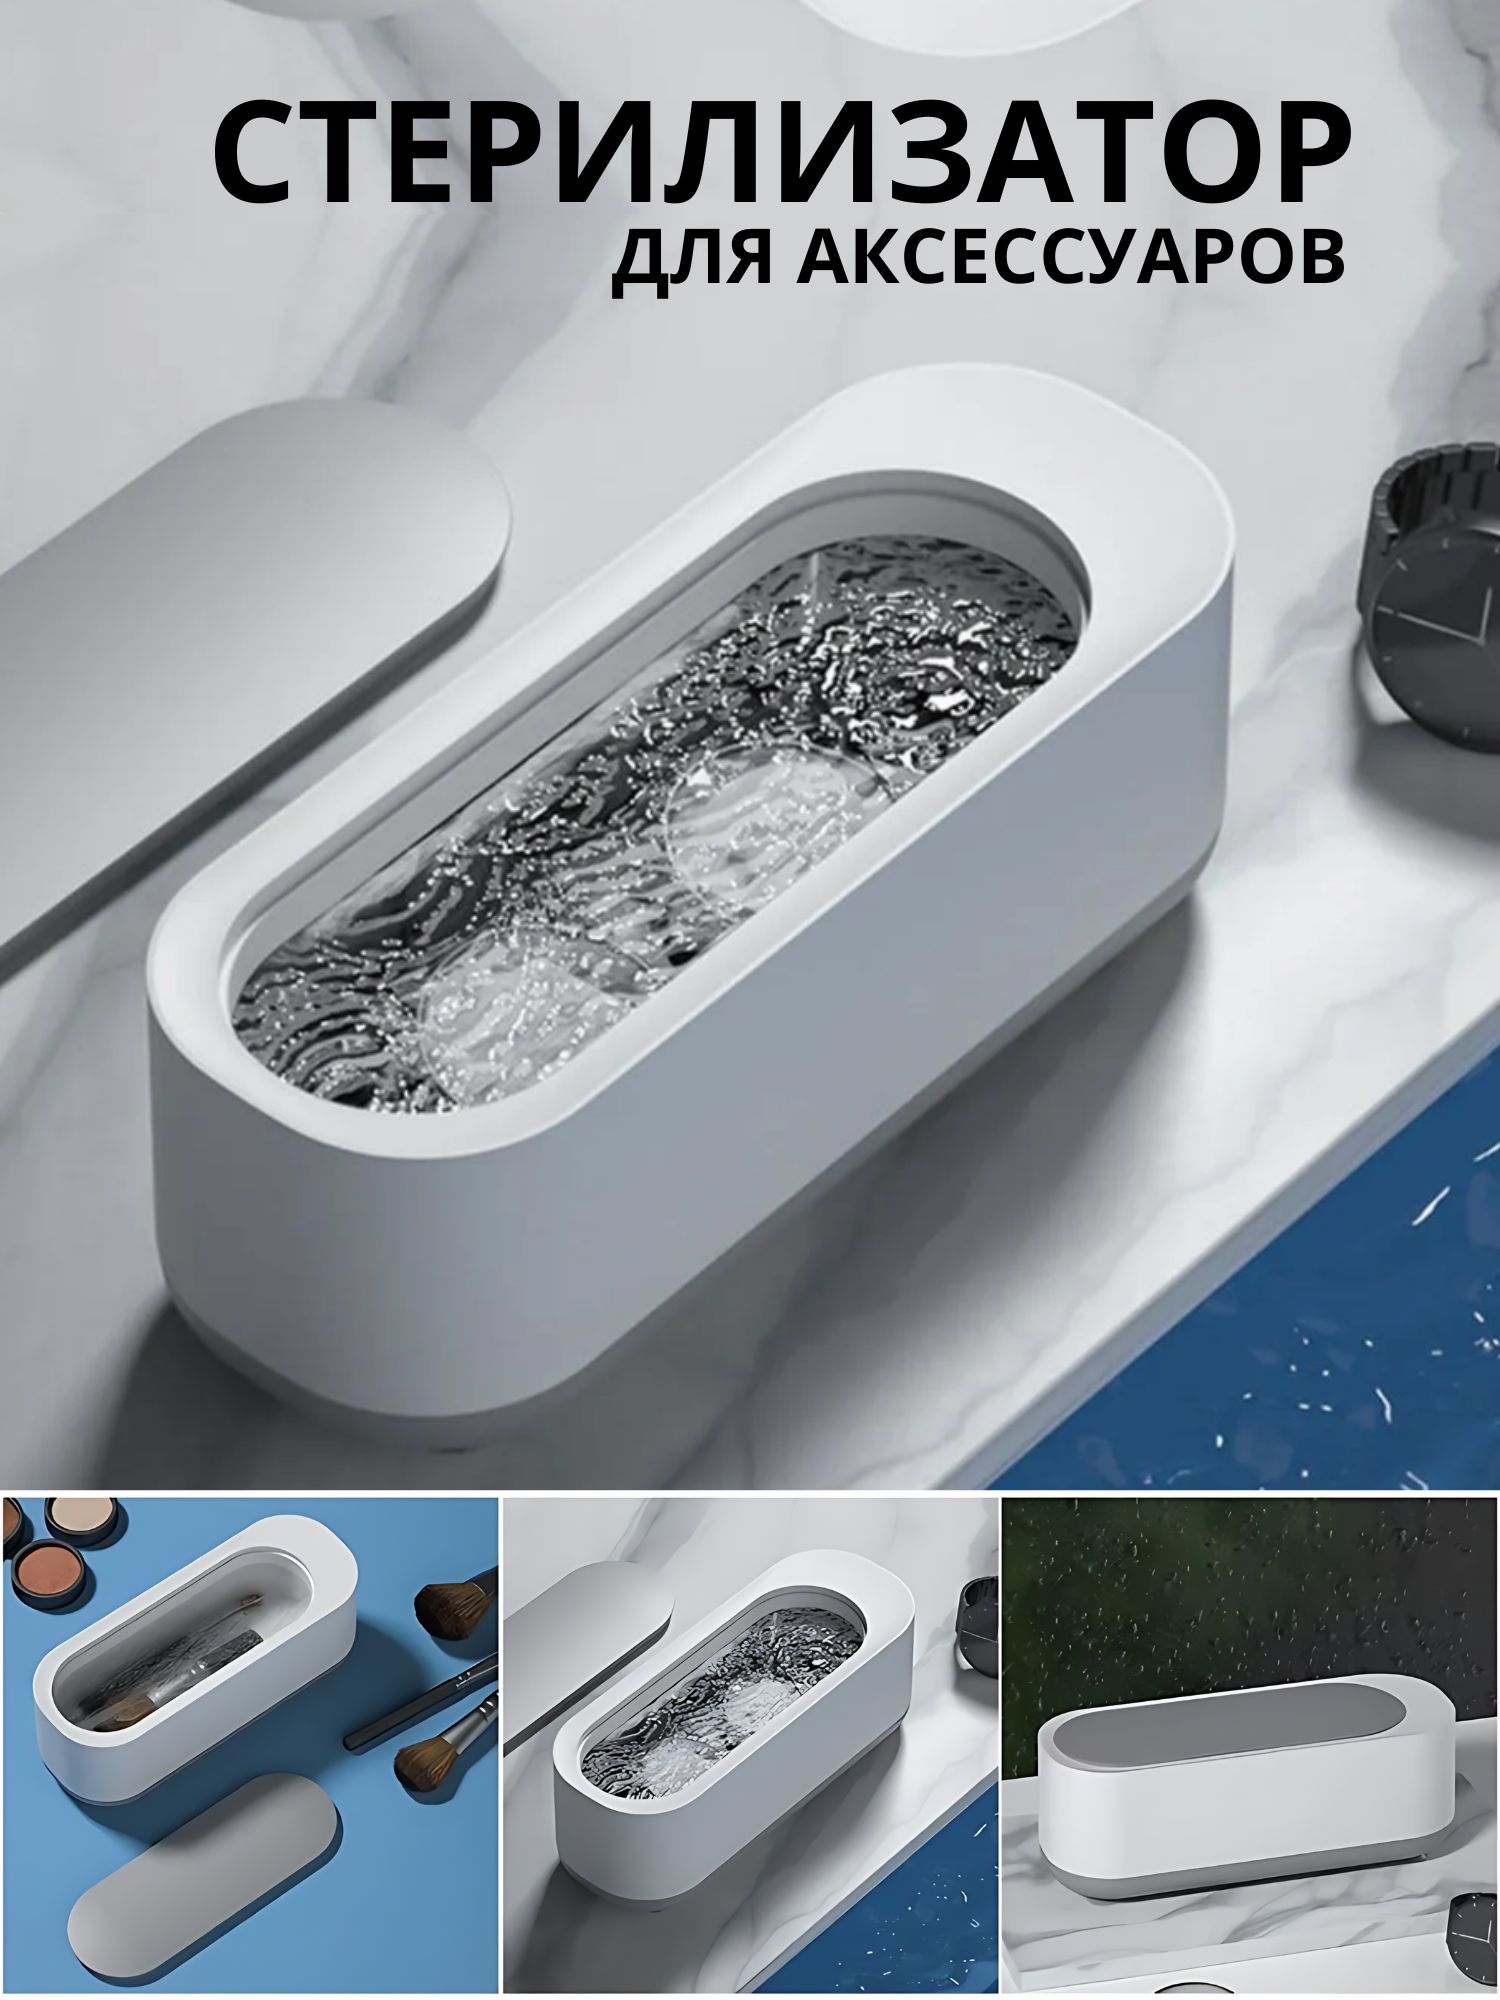 Ультразвуковая ванна для аксессуаров, с крышкой, цвет бело-серый ультразвуковая ванна для аксессуаров с крышкой бело серый